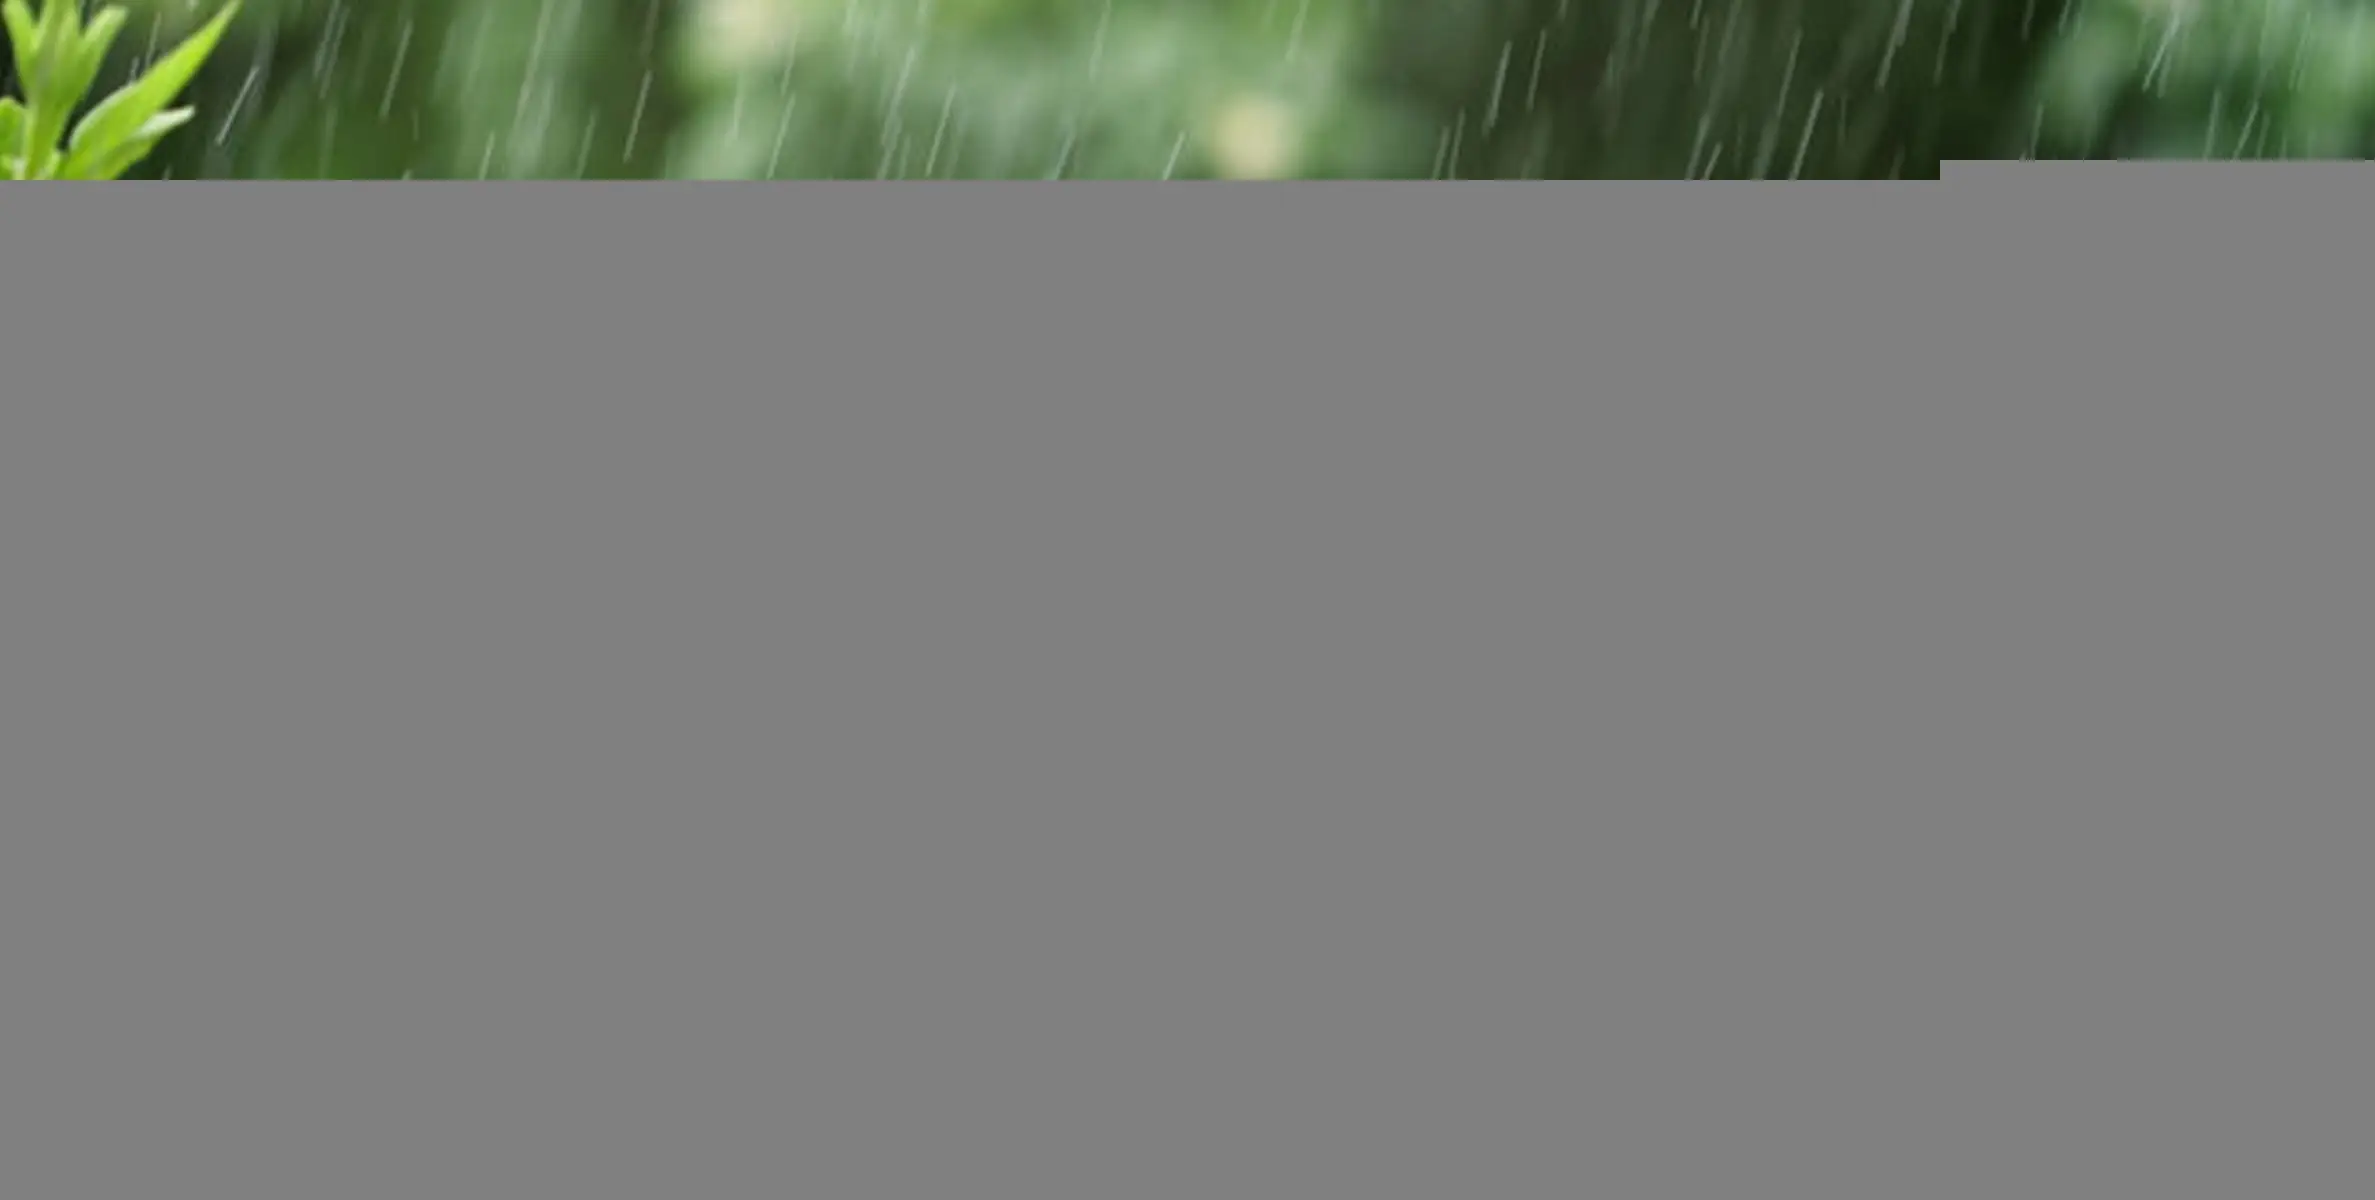  #rain |മഴ കനക്കും, ഞായറാഴ്ച 5 ജില്ലകളിൽ യെല്ലോ അലർട്ട്, മെയ് 14 വരെ എല്ലാ ജില്ലകളിലും മഴ; ഏറ്റവും പുതിയ അറിയിപ്പ്